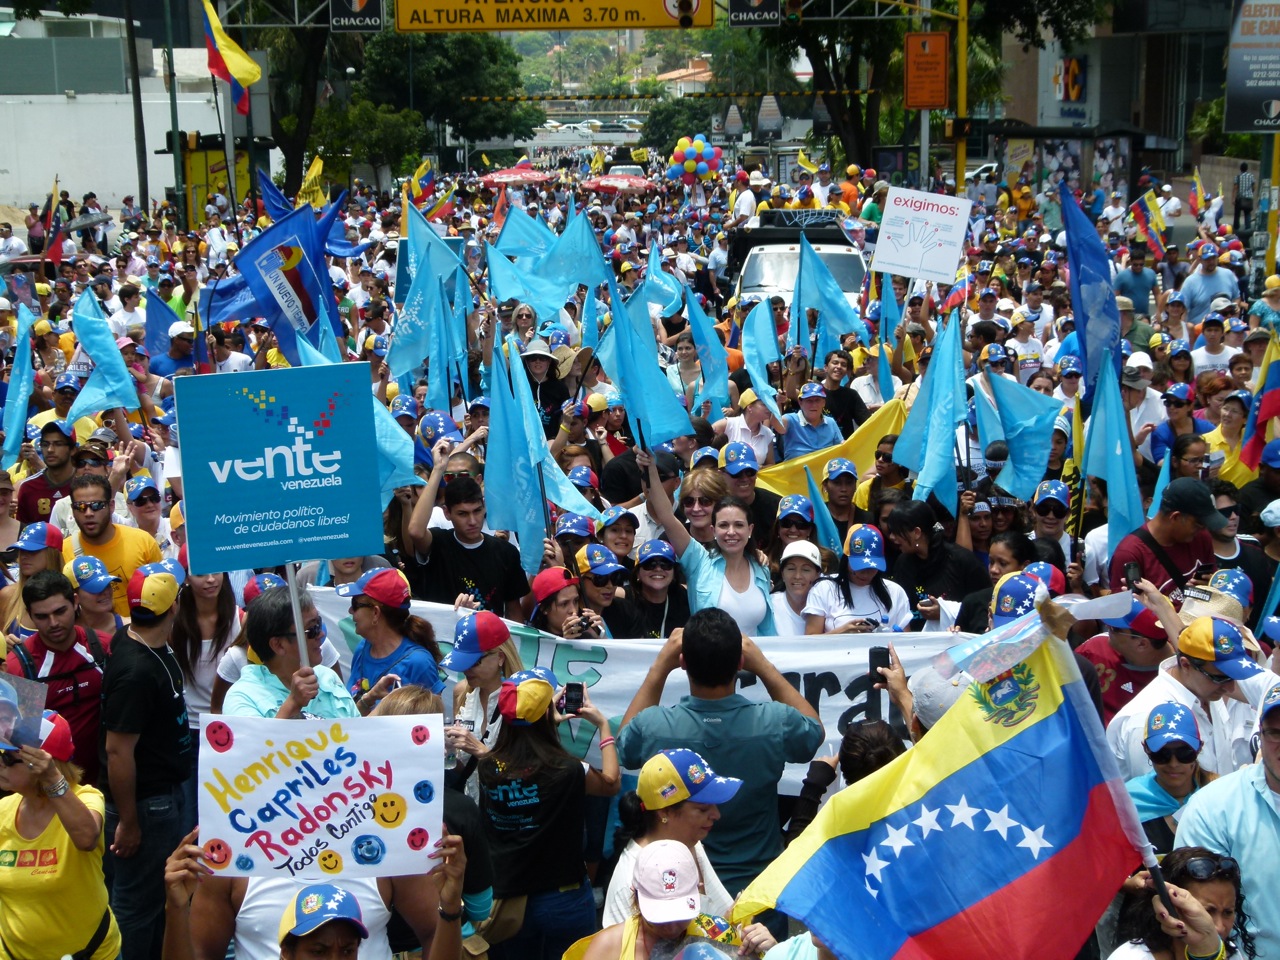 Galería de fotos de Vente Venezuela en el cierre de campaña de Henrique Capriles